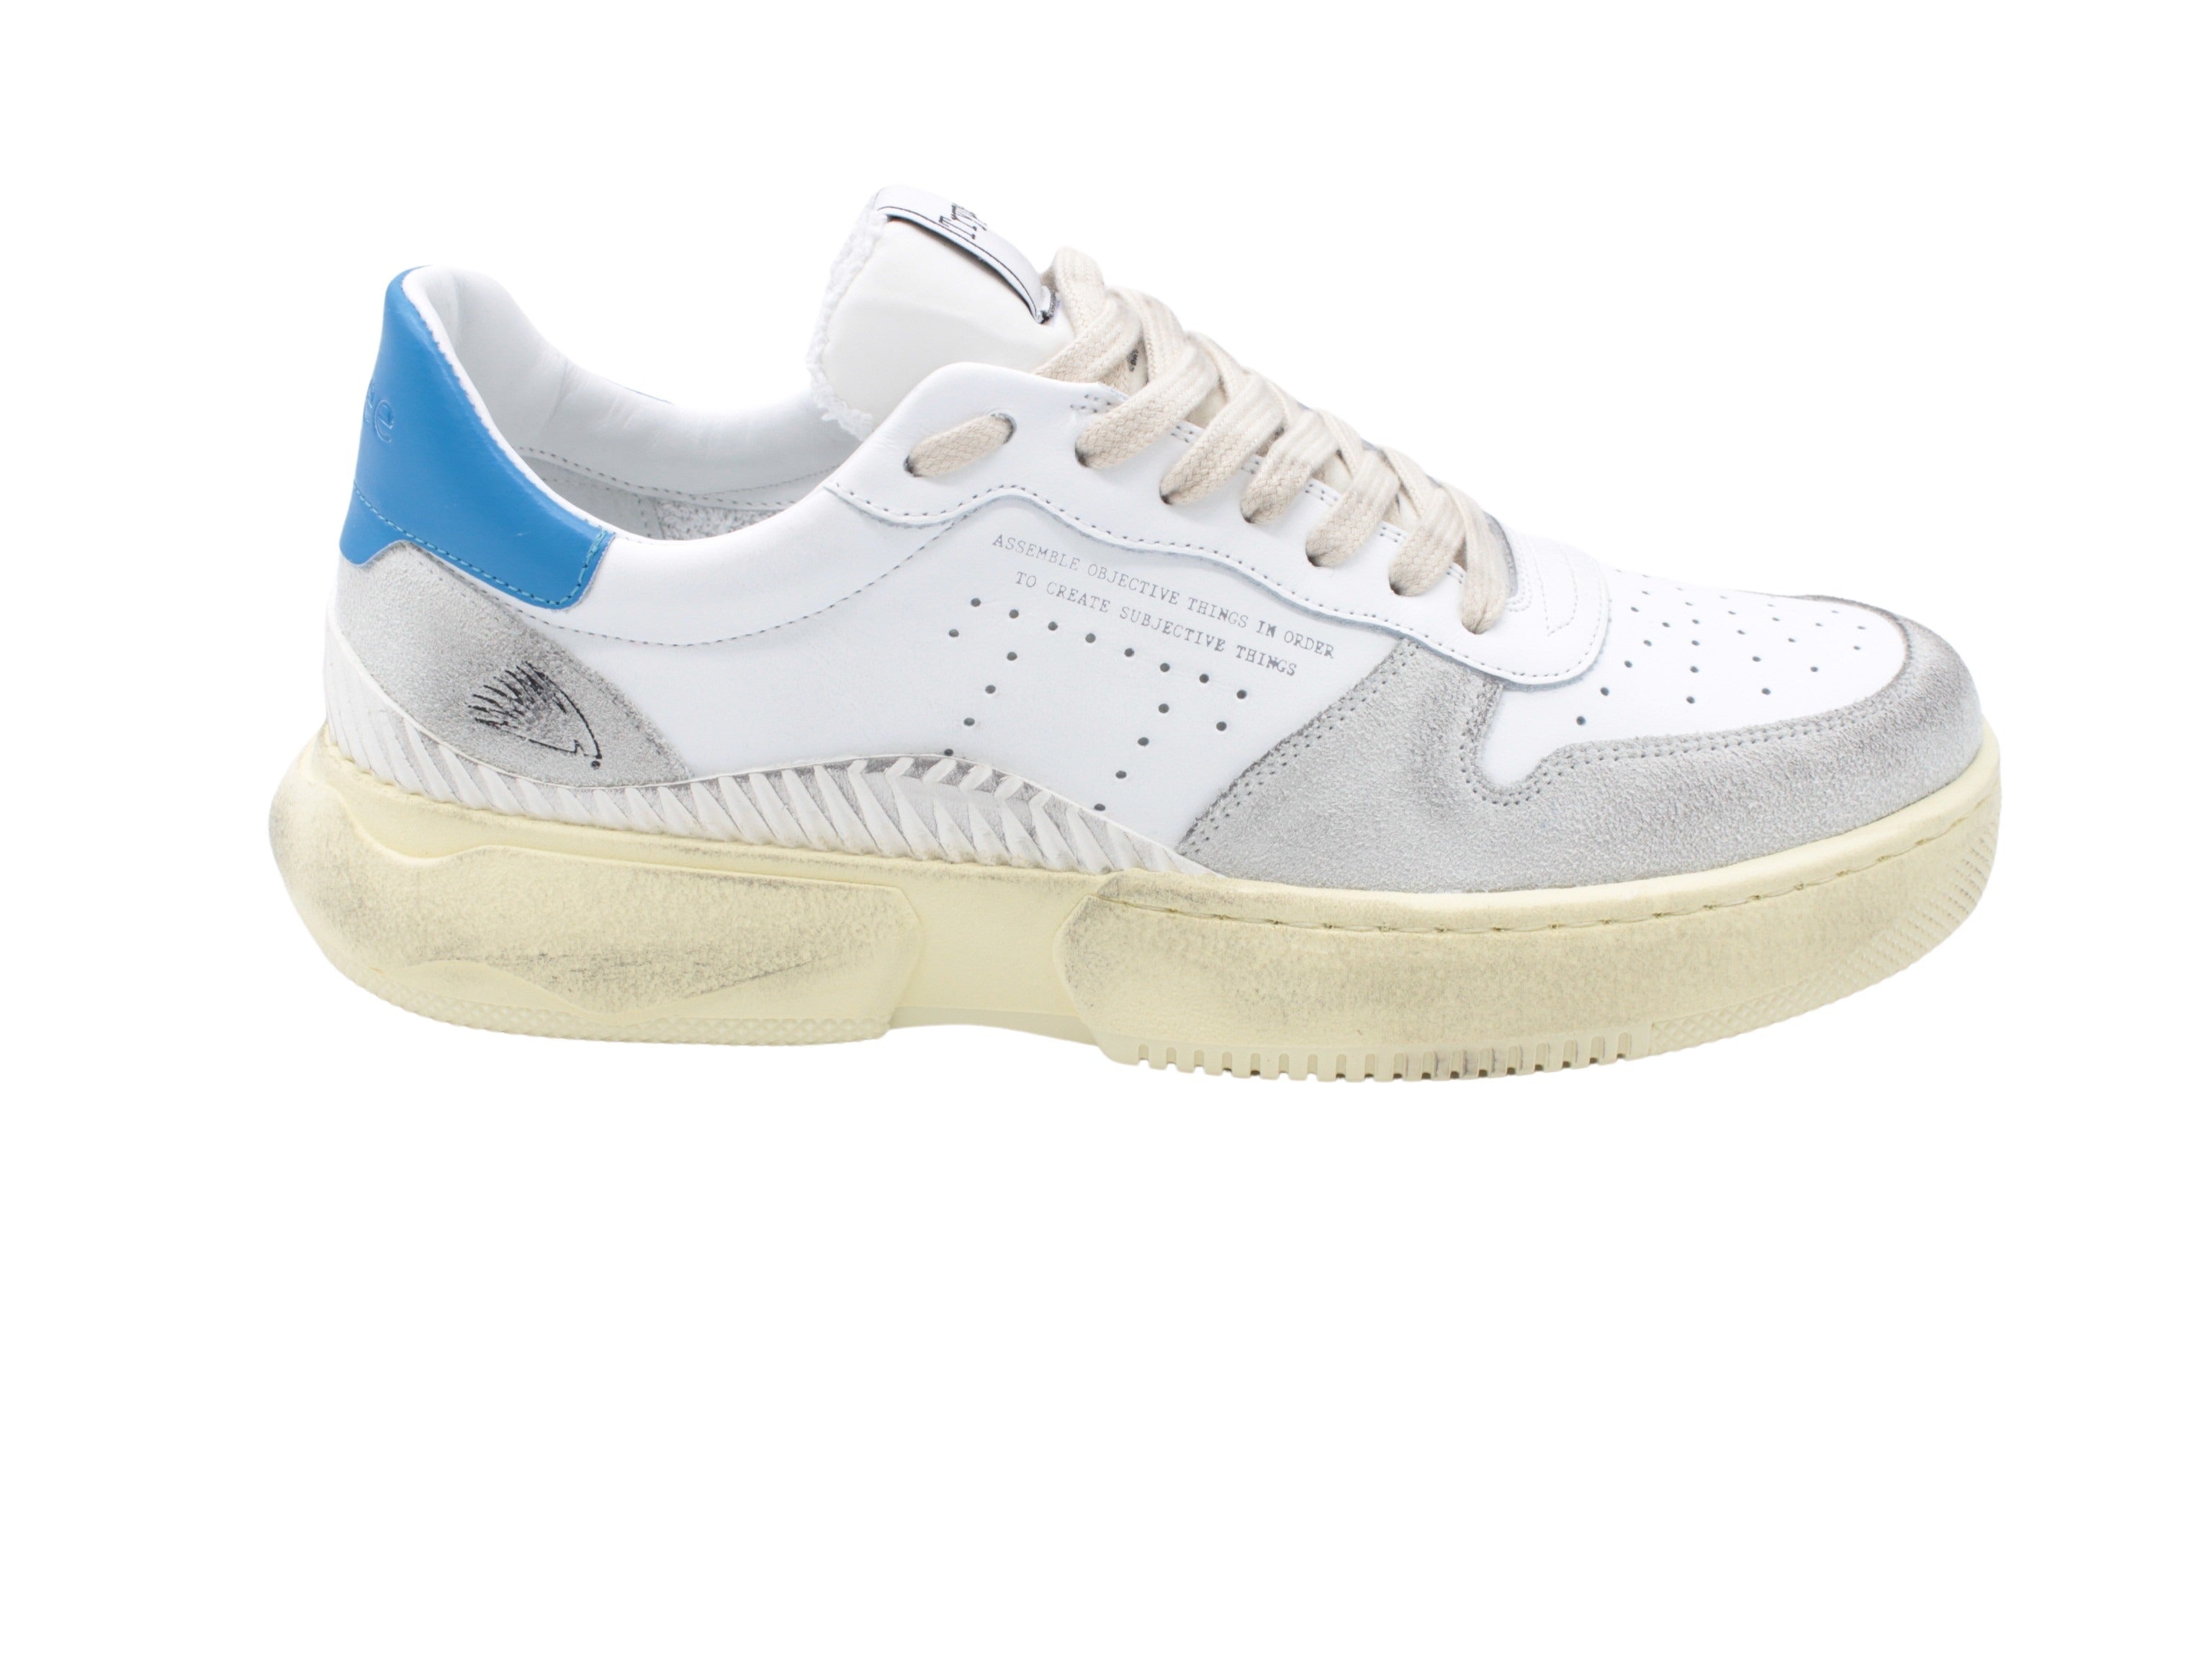 S129 white-blue sneaker